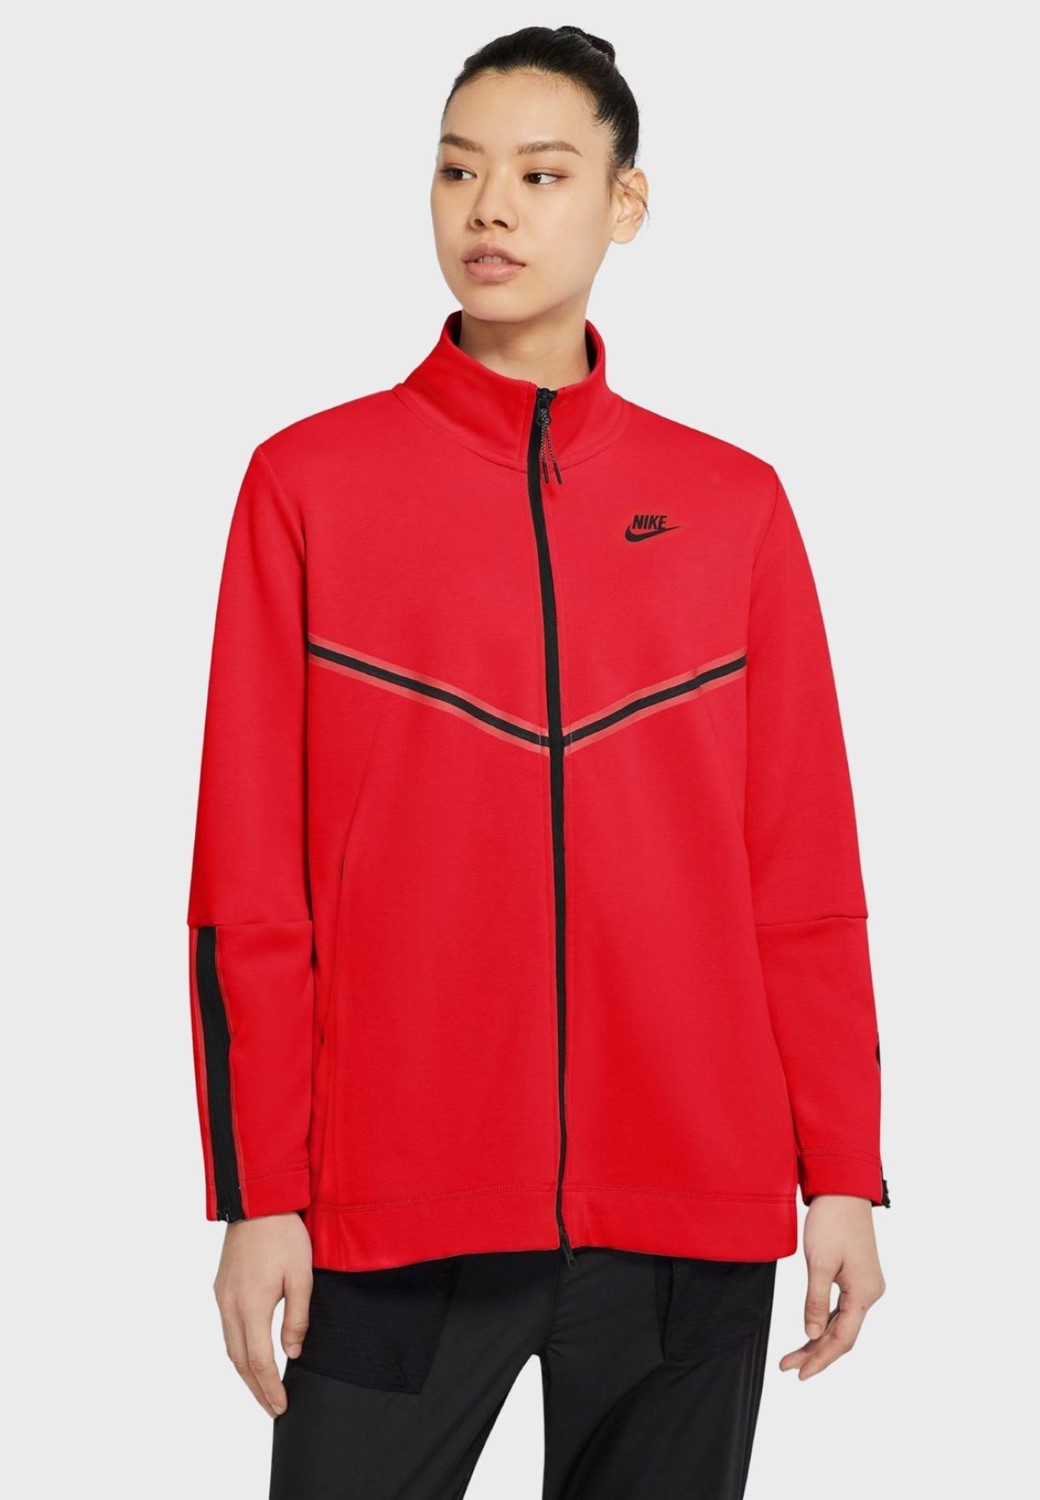 Nike TECH FLEECE FULL ZIP RED Size L CW4296-673 | eBay